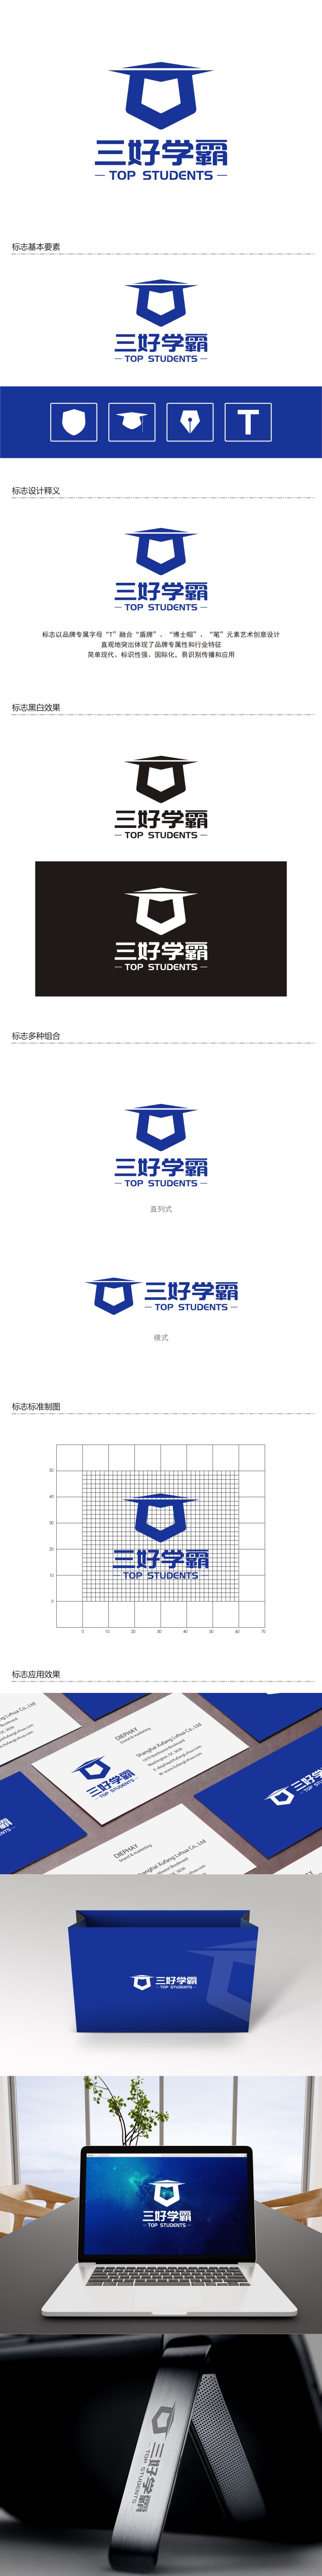 陈国伟的三好学霸logo设计